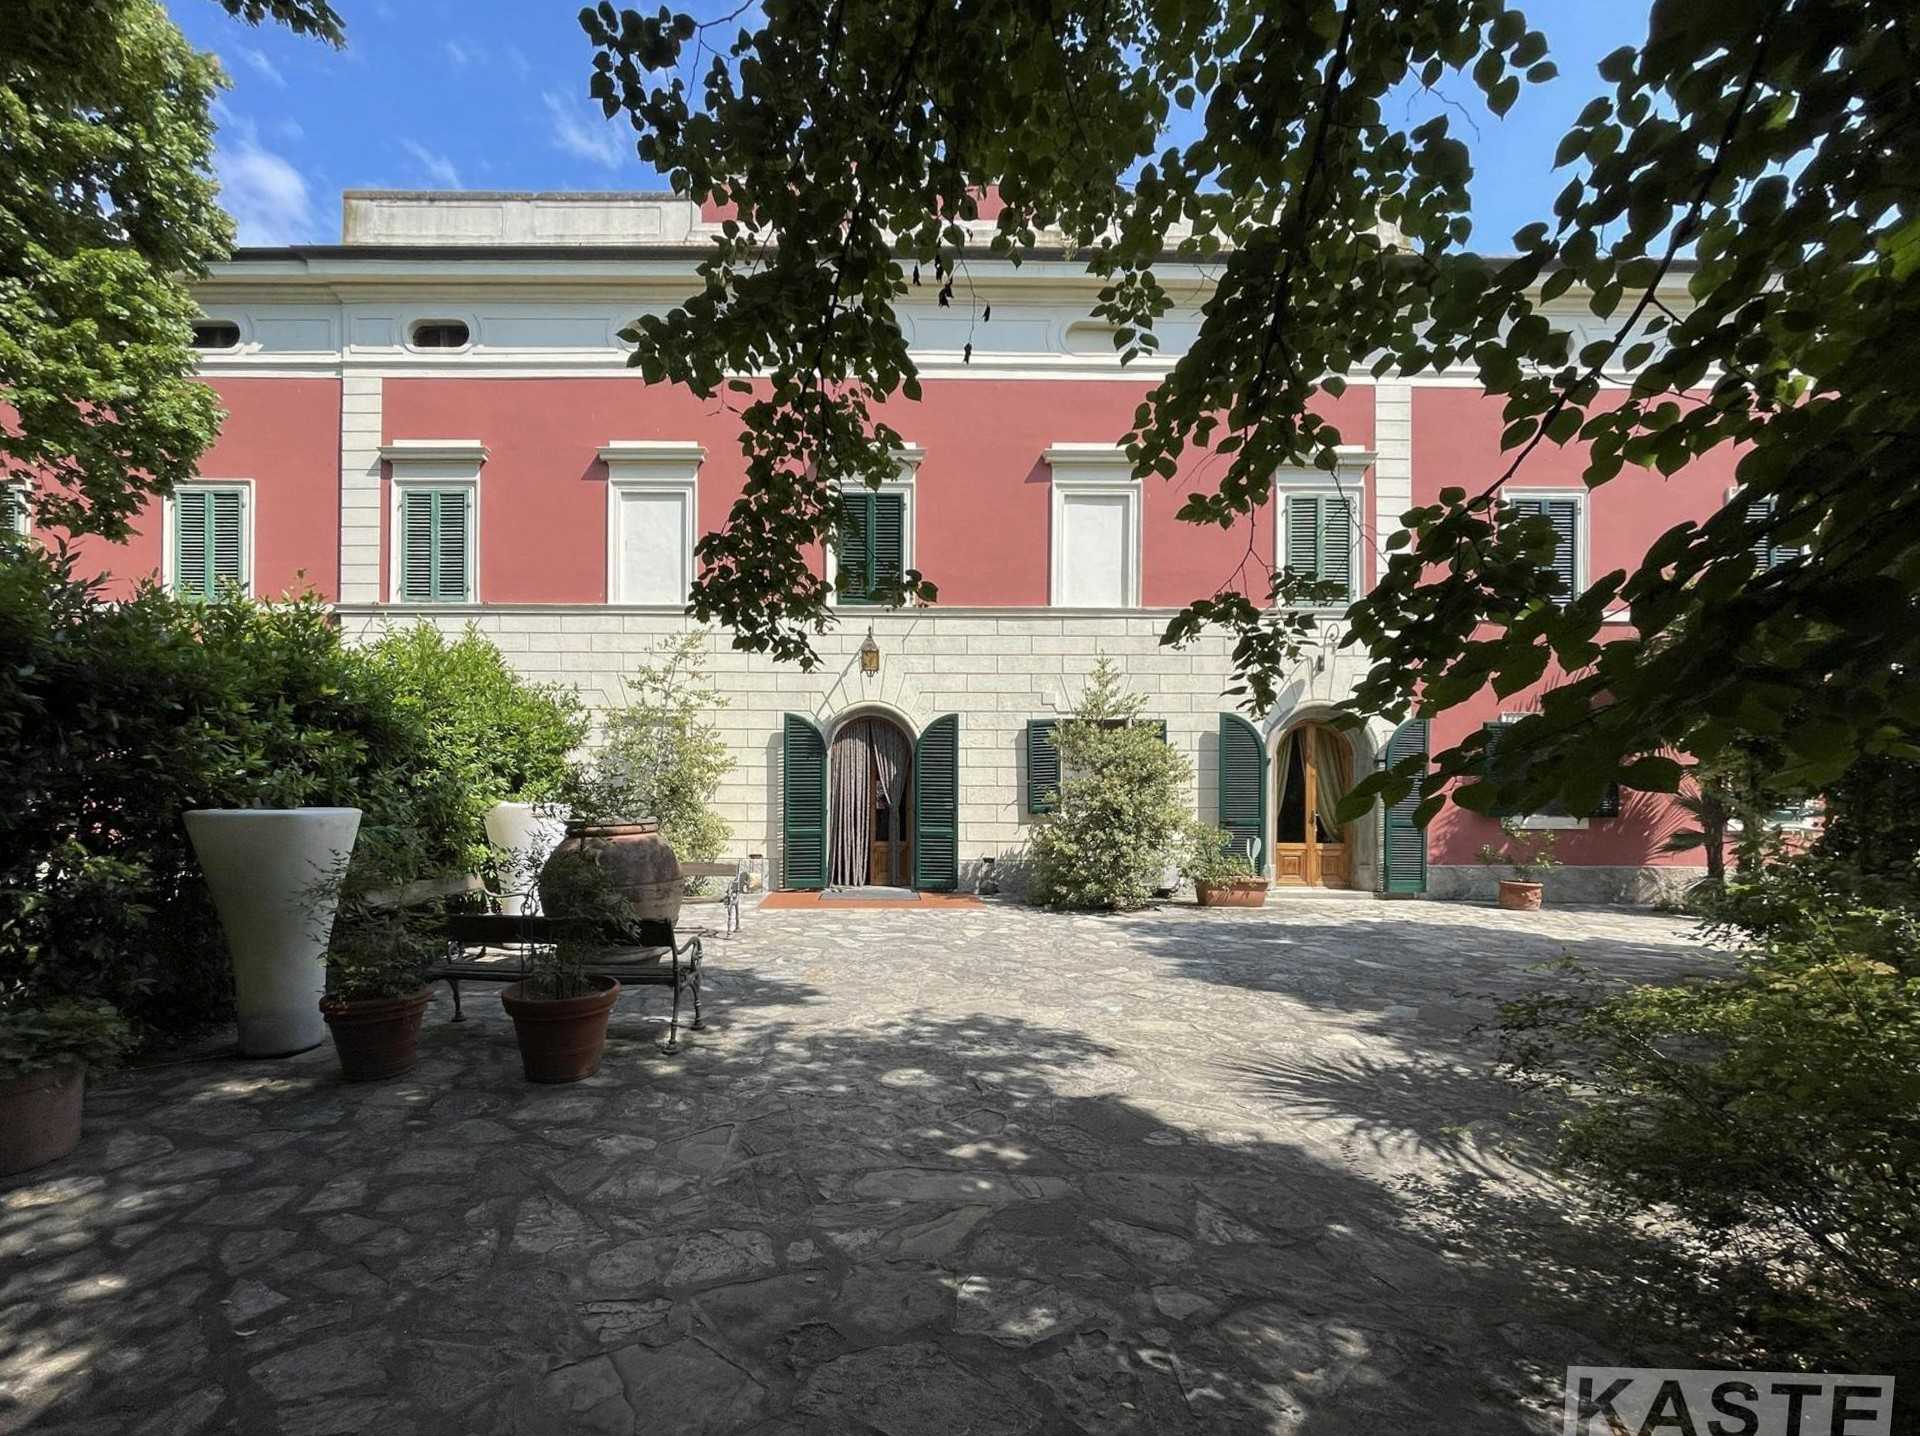 Images Vlakbij Pisa: 19e eeuwse villa met klein park